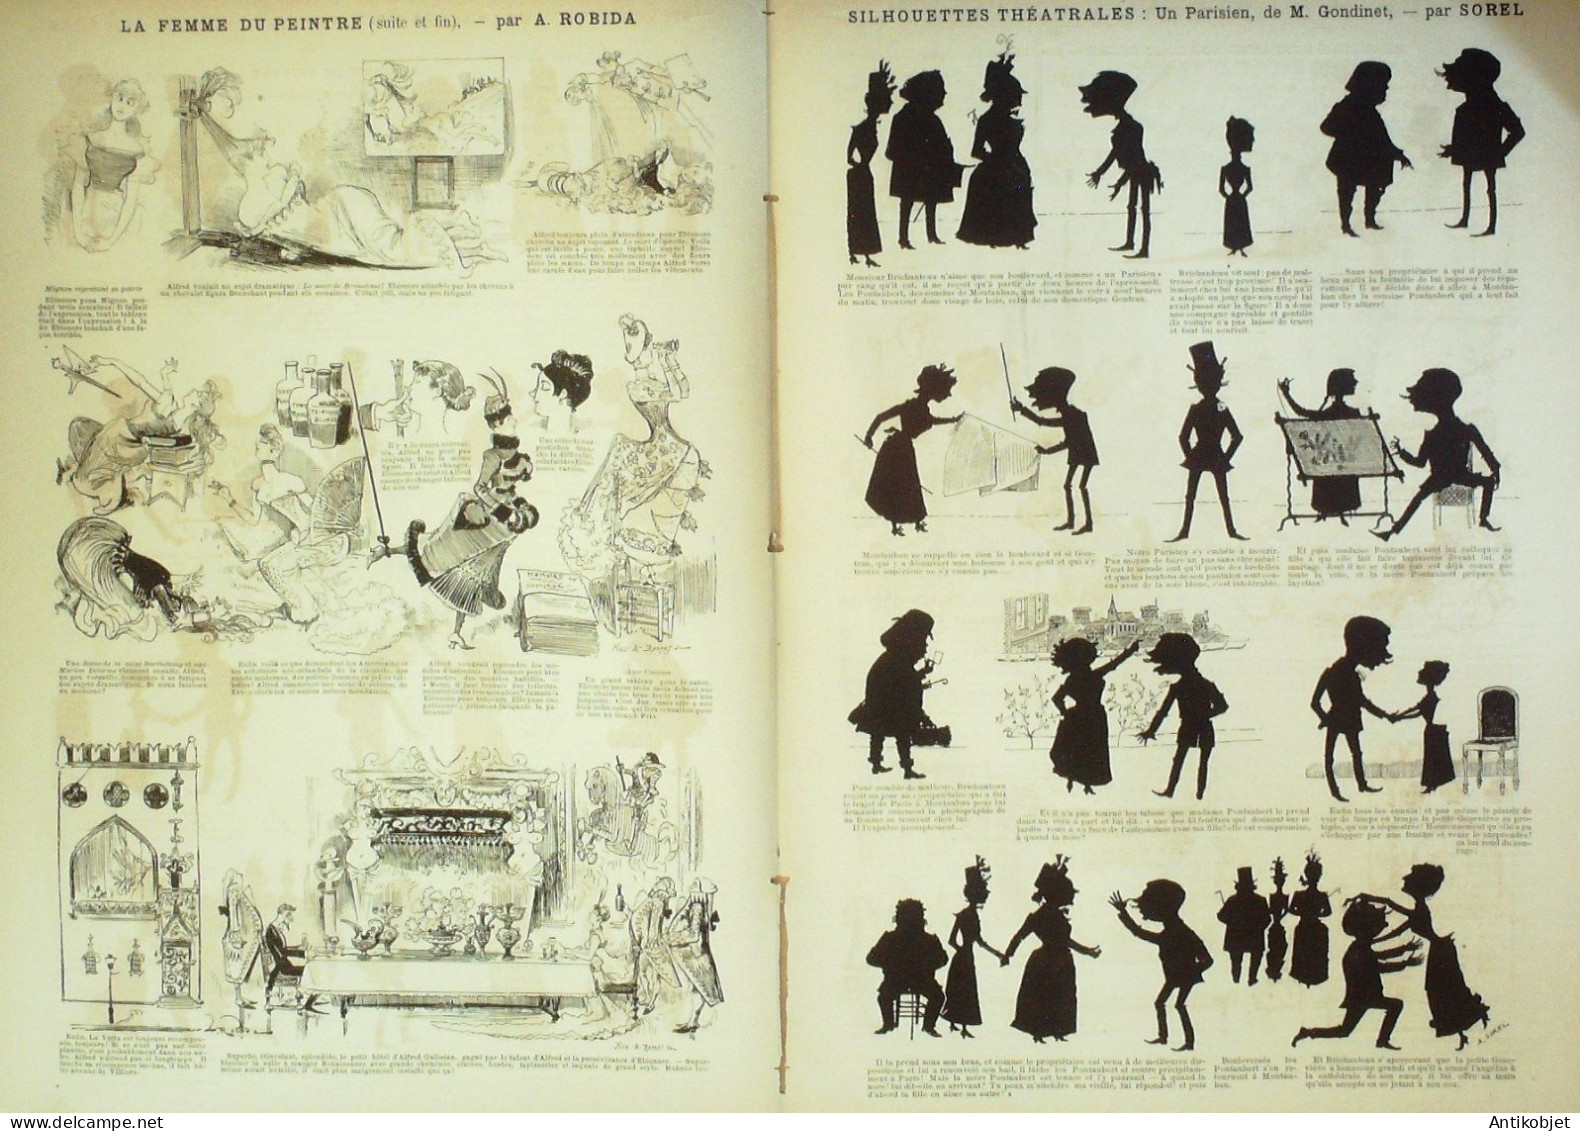 La Caricature 1886 N°320 Femme Du Peintre Robida Silhouettes Sorel Concierge Draner - Tijdschriften - Voor 1900